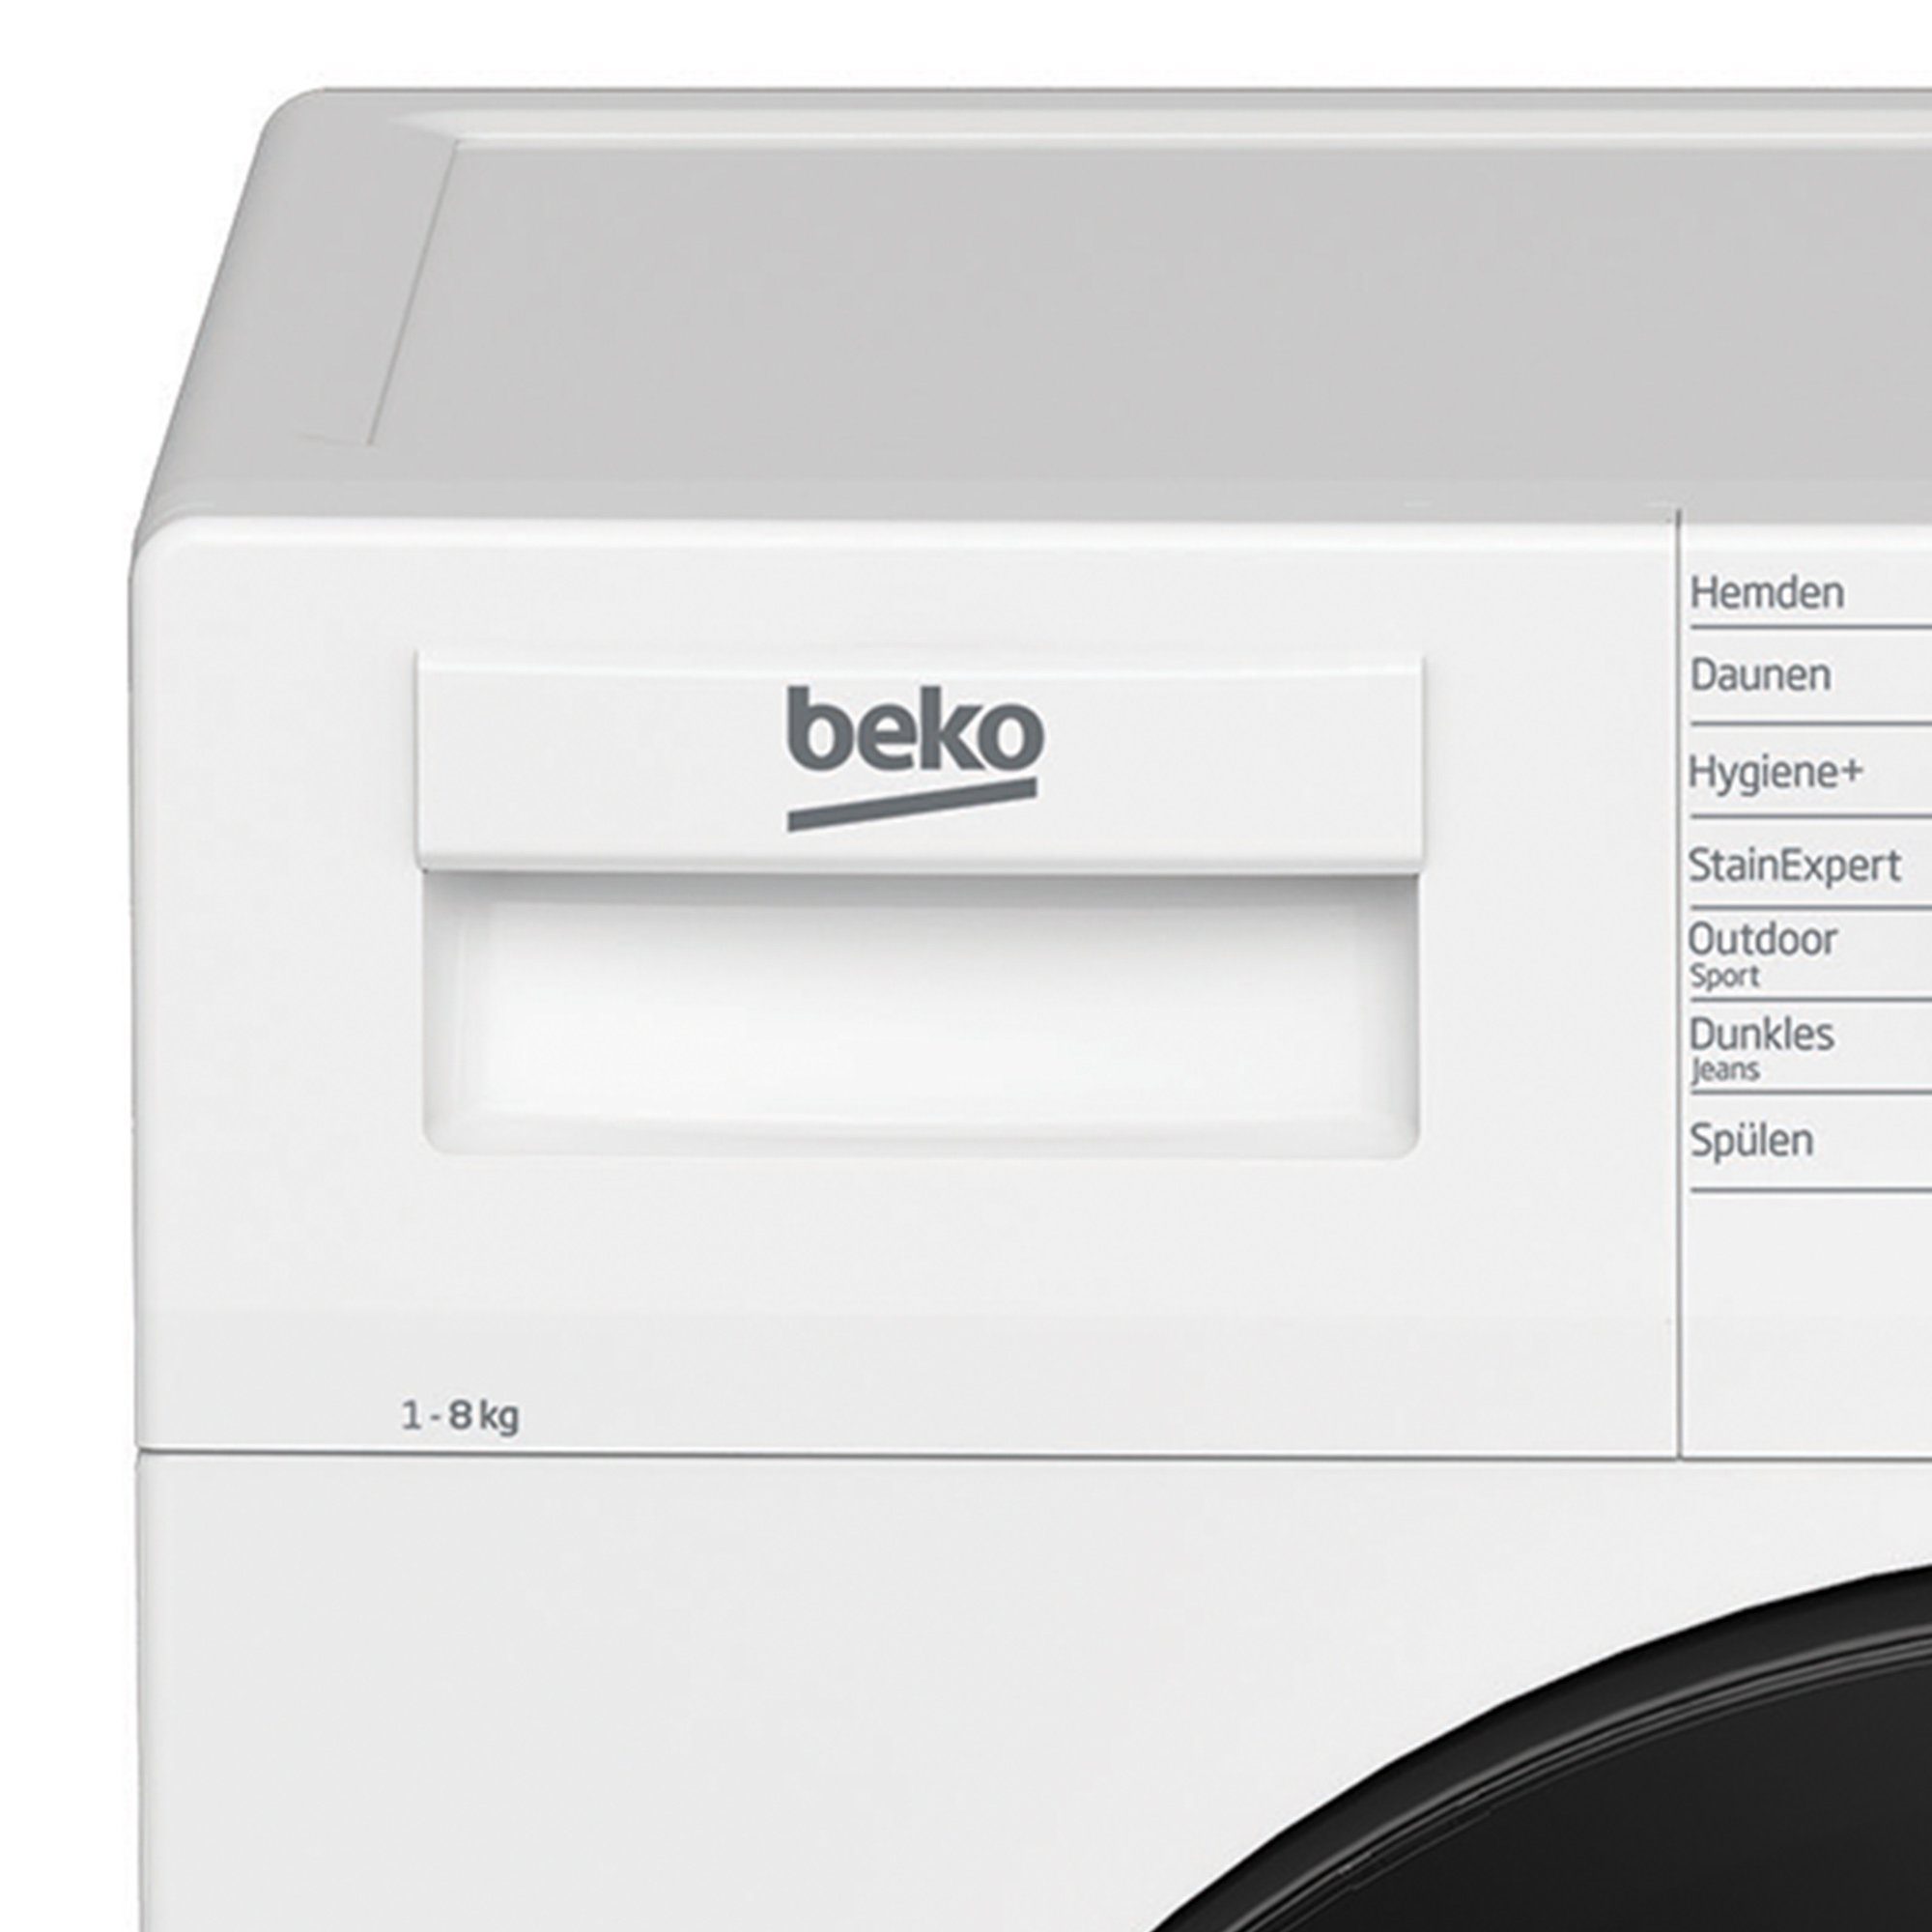 BEKO Waschmaschine 1400 Schnell+ U/min, kg, SteamCure, Hair WMC81464ST1, Removal, 8,00 Pet